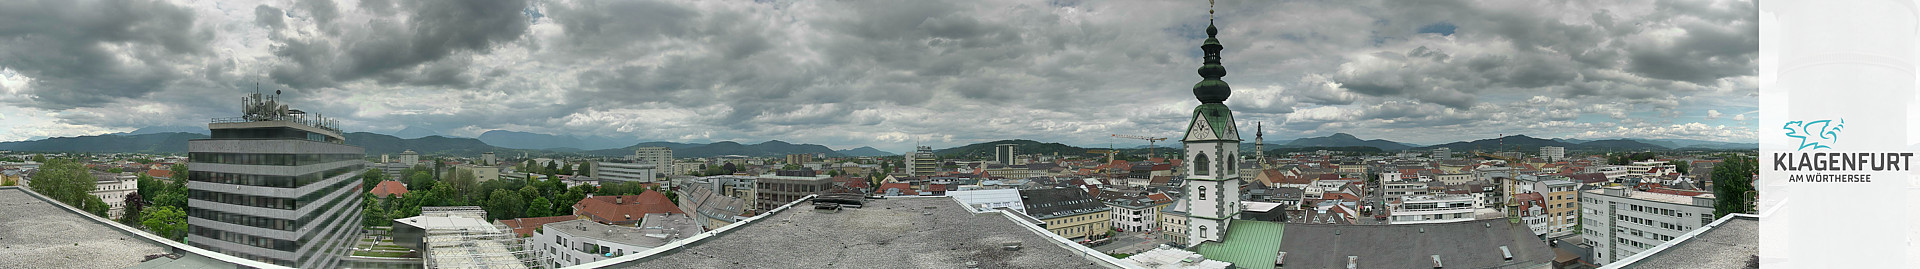 Panoramakamera - Klagenfurt am Wörthersee - Domplatz / Klagenfurt / Österreich